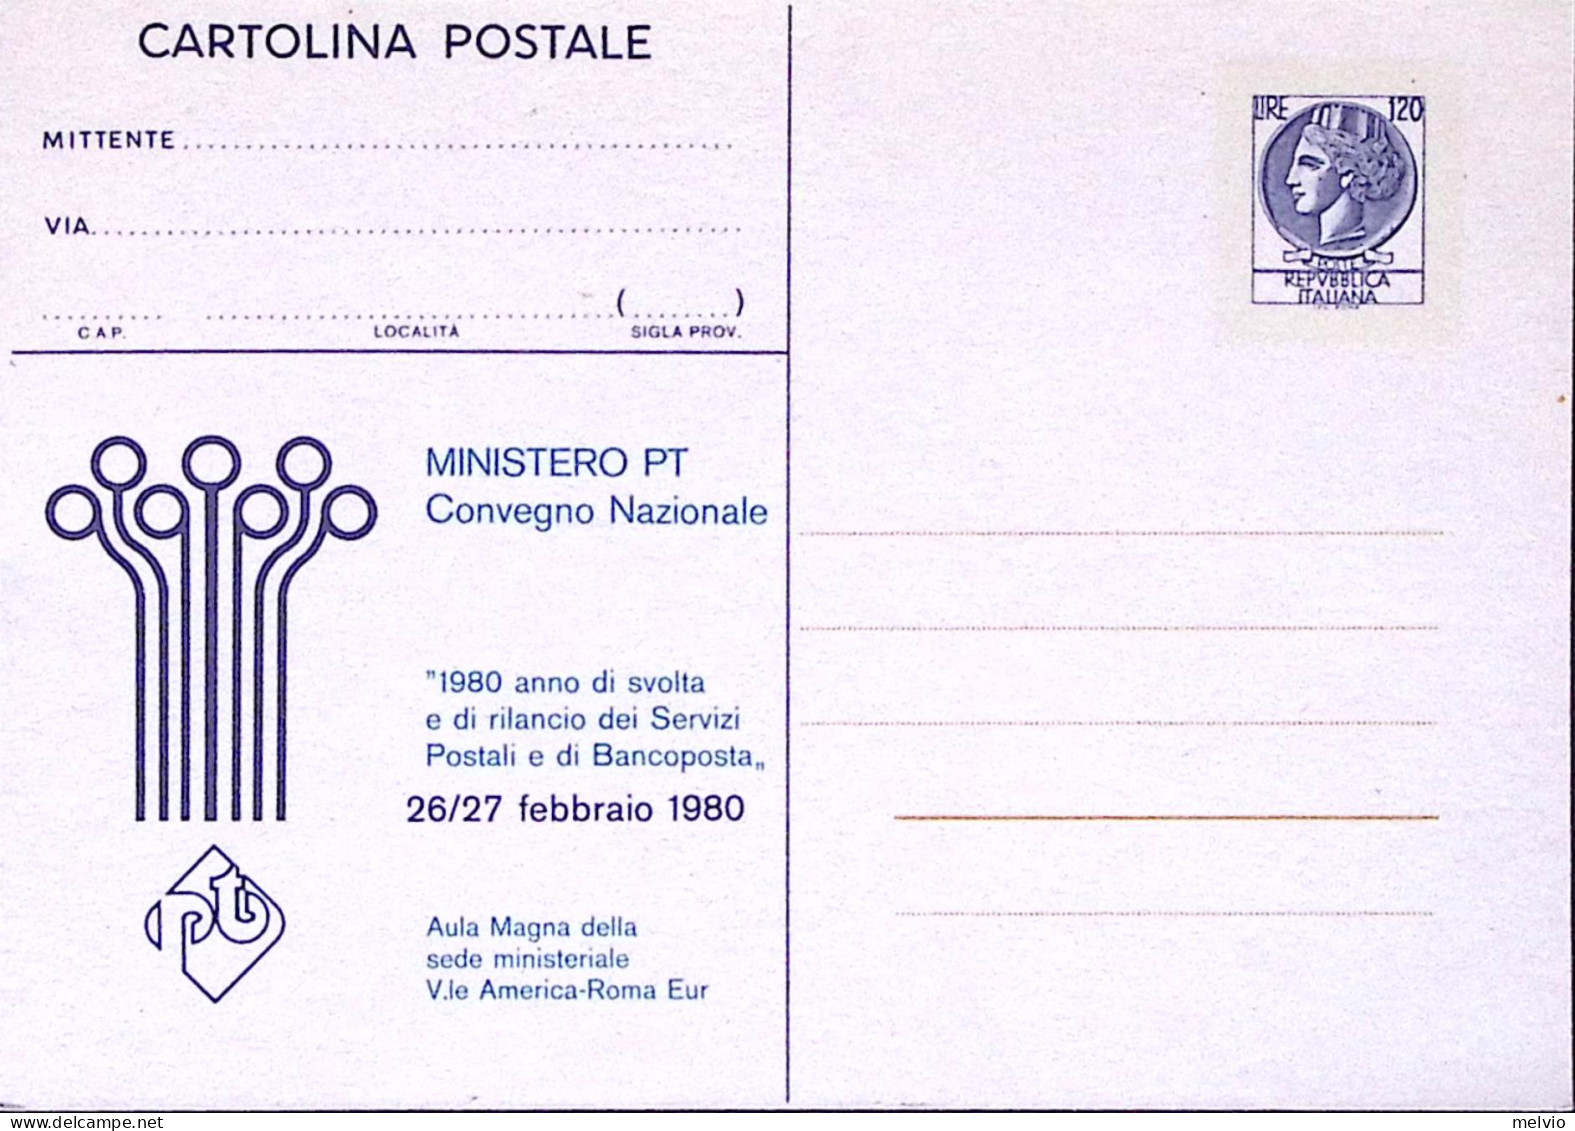 1980-Cartolina Postale Convegno Servizi Postali Lire 120 Nuova - Ganzsachen